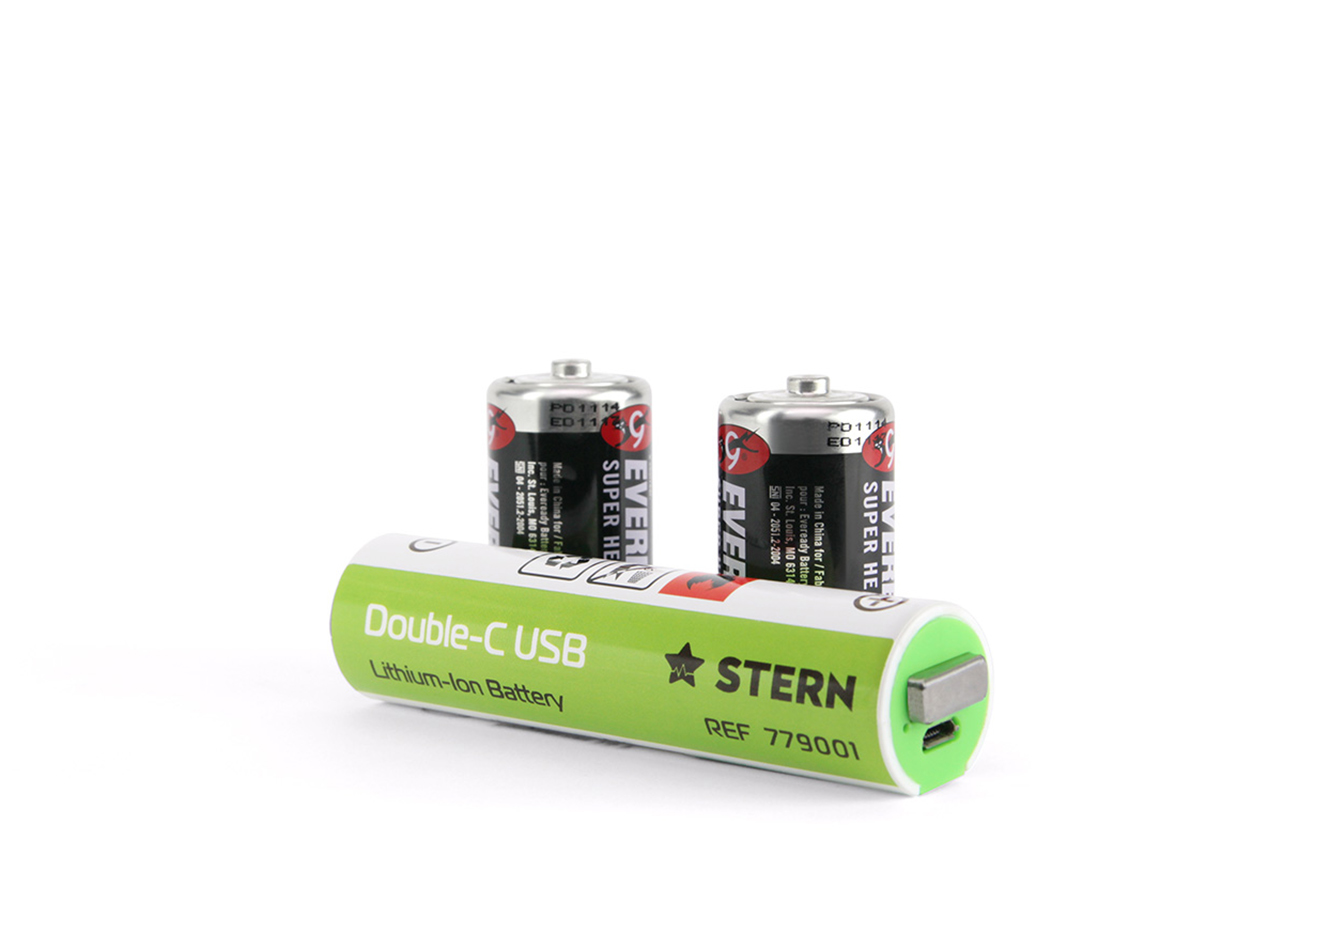 Аккумуляторная батарея Double-C USB напряжение 3,6 V емкость 3400 mAh номер по каталогу 779001 Stern, Россия